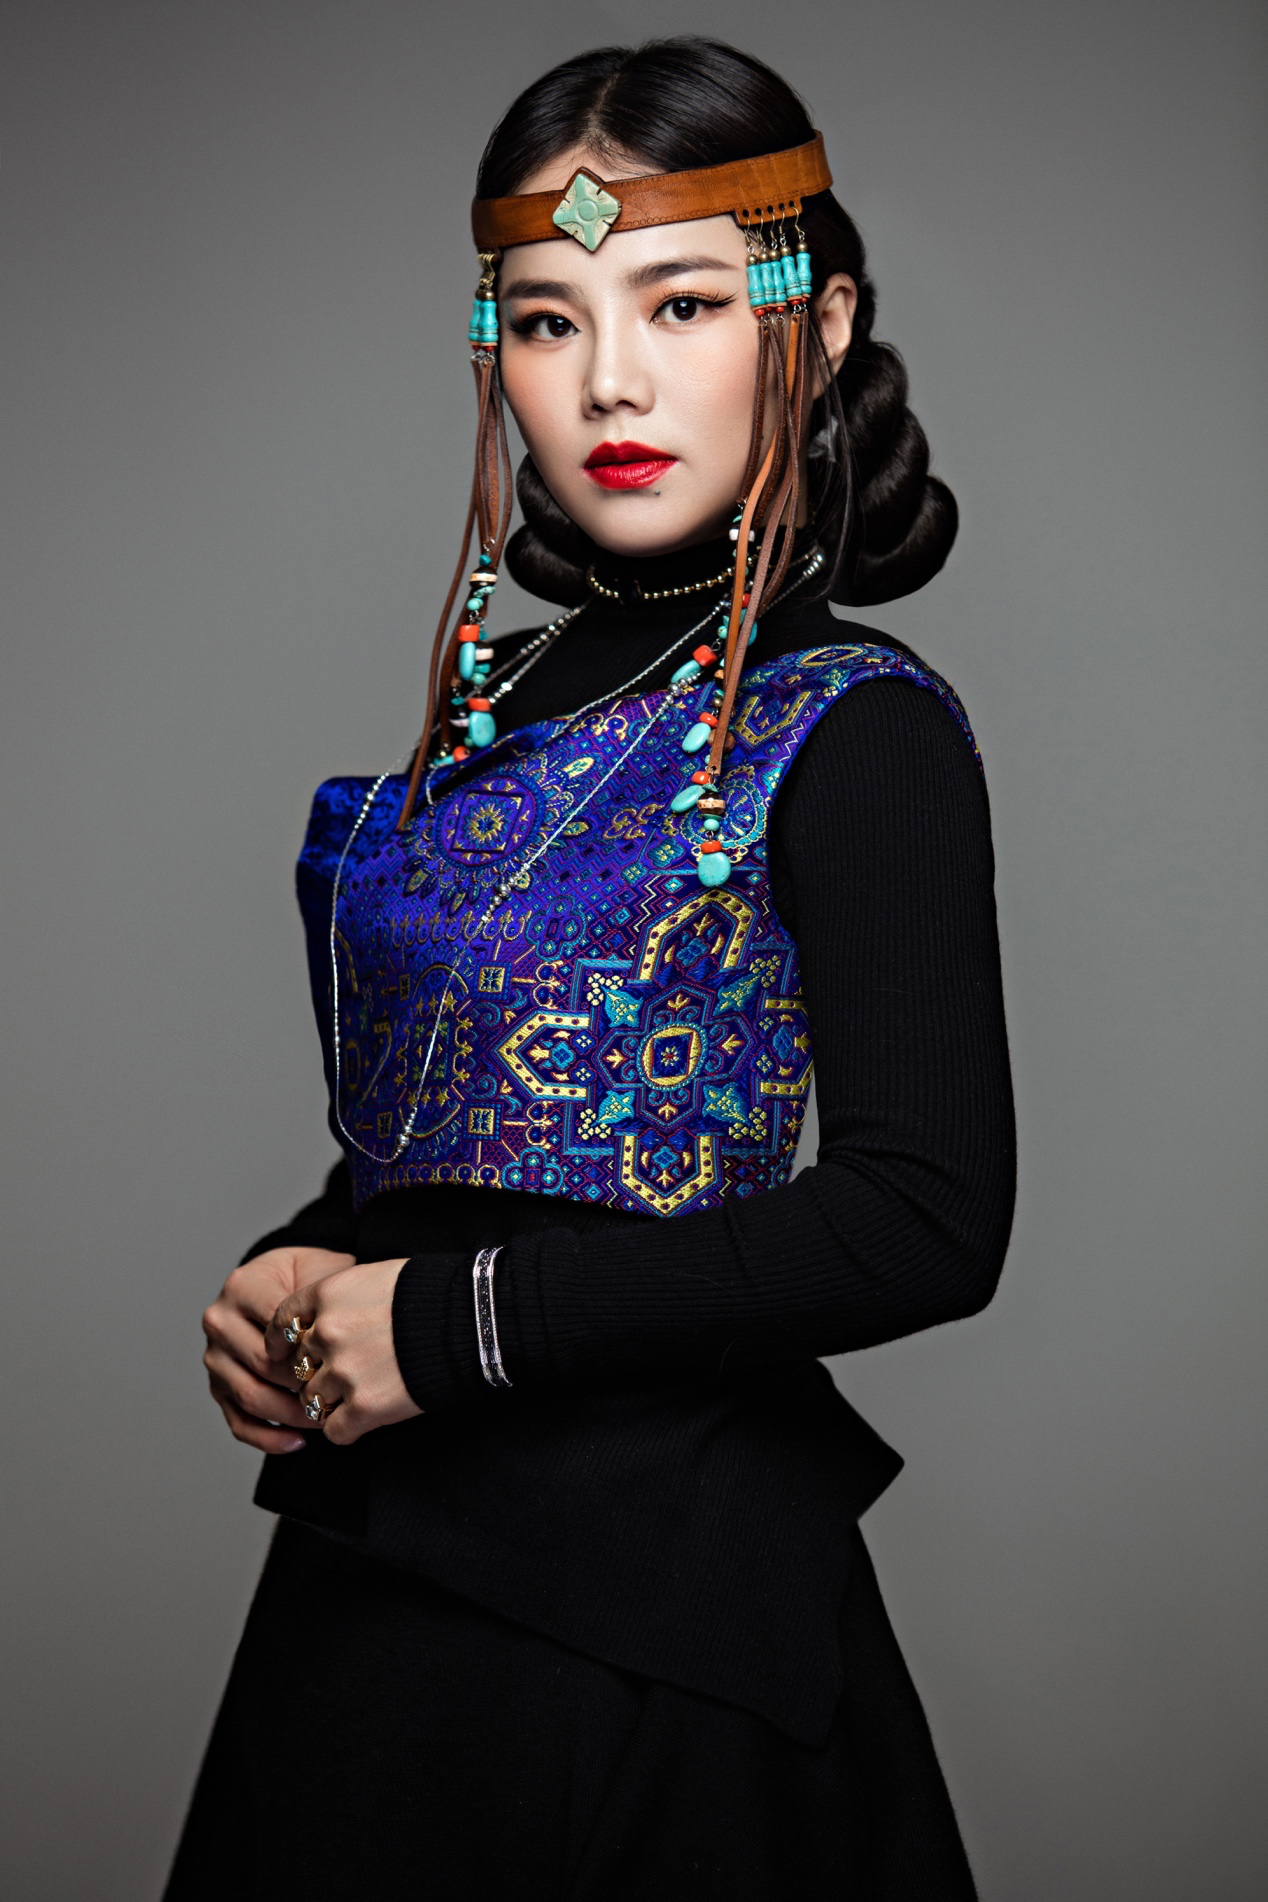 阿木古楞(蒙古族歌手)